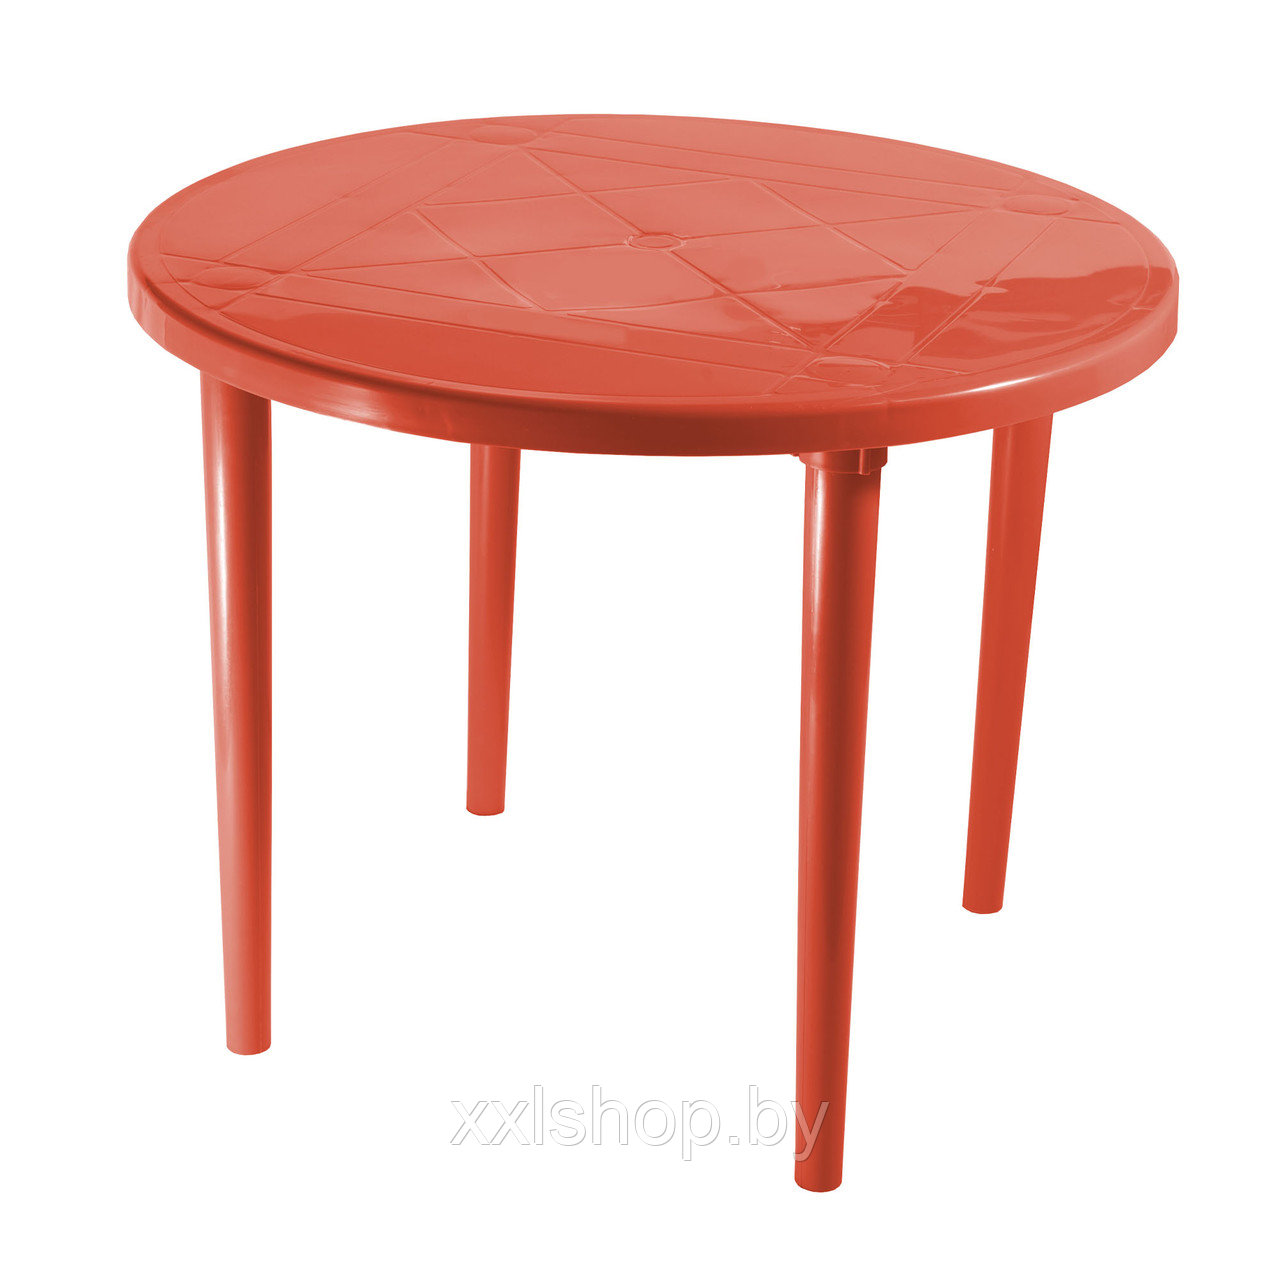 Стол пластиковый круглый (красный)